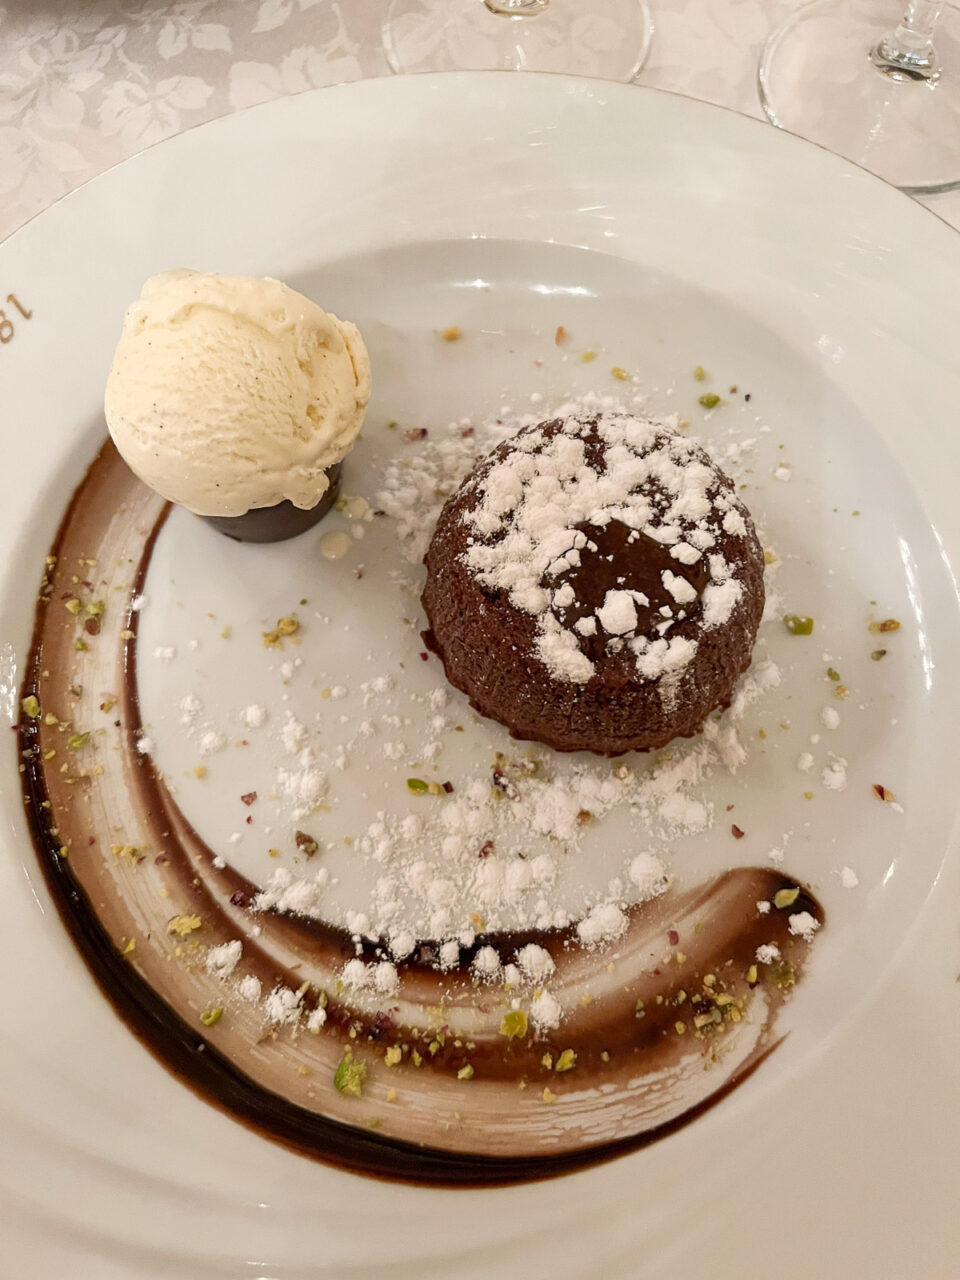 Chocolate dessert at 1886 restaurant